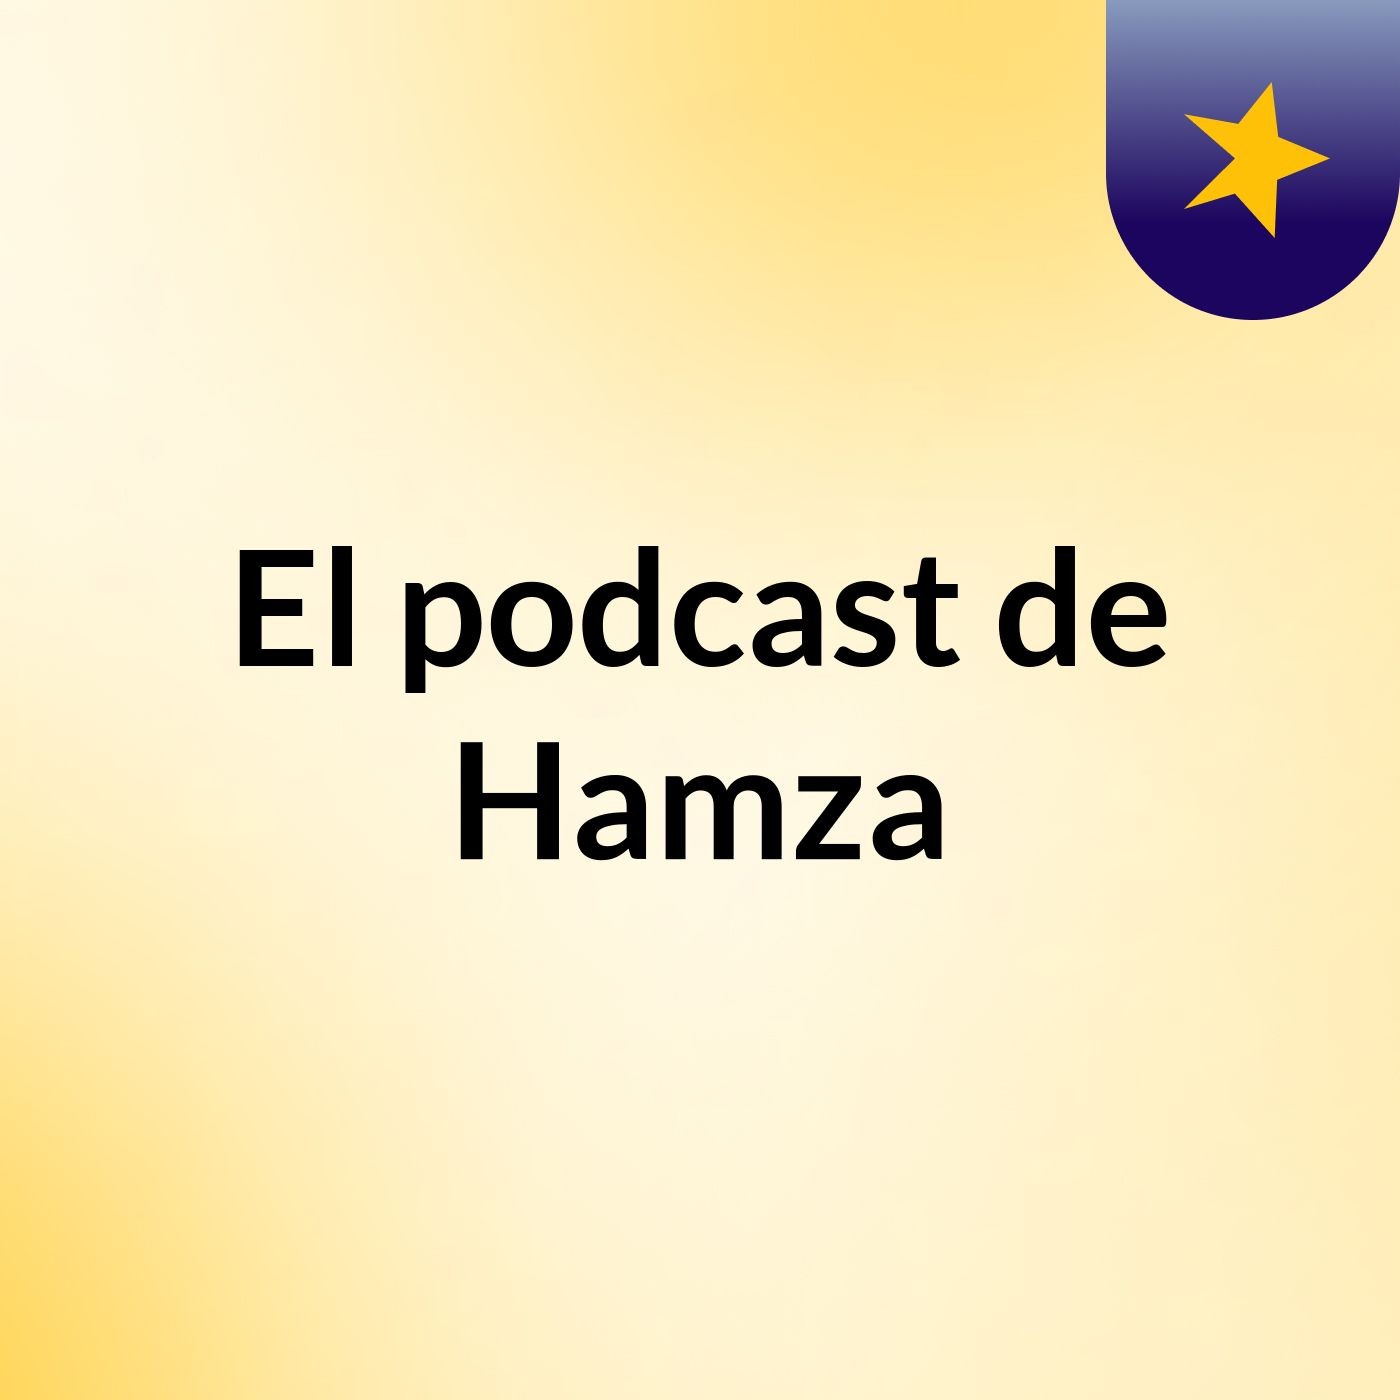 El podcast de Hamza